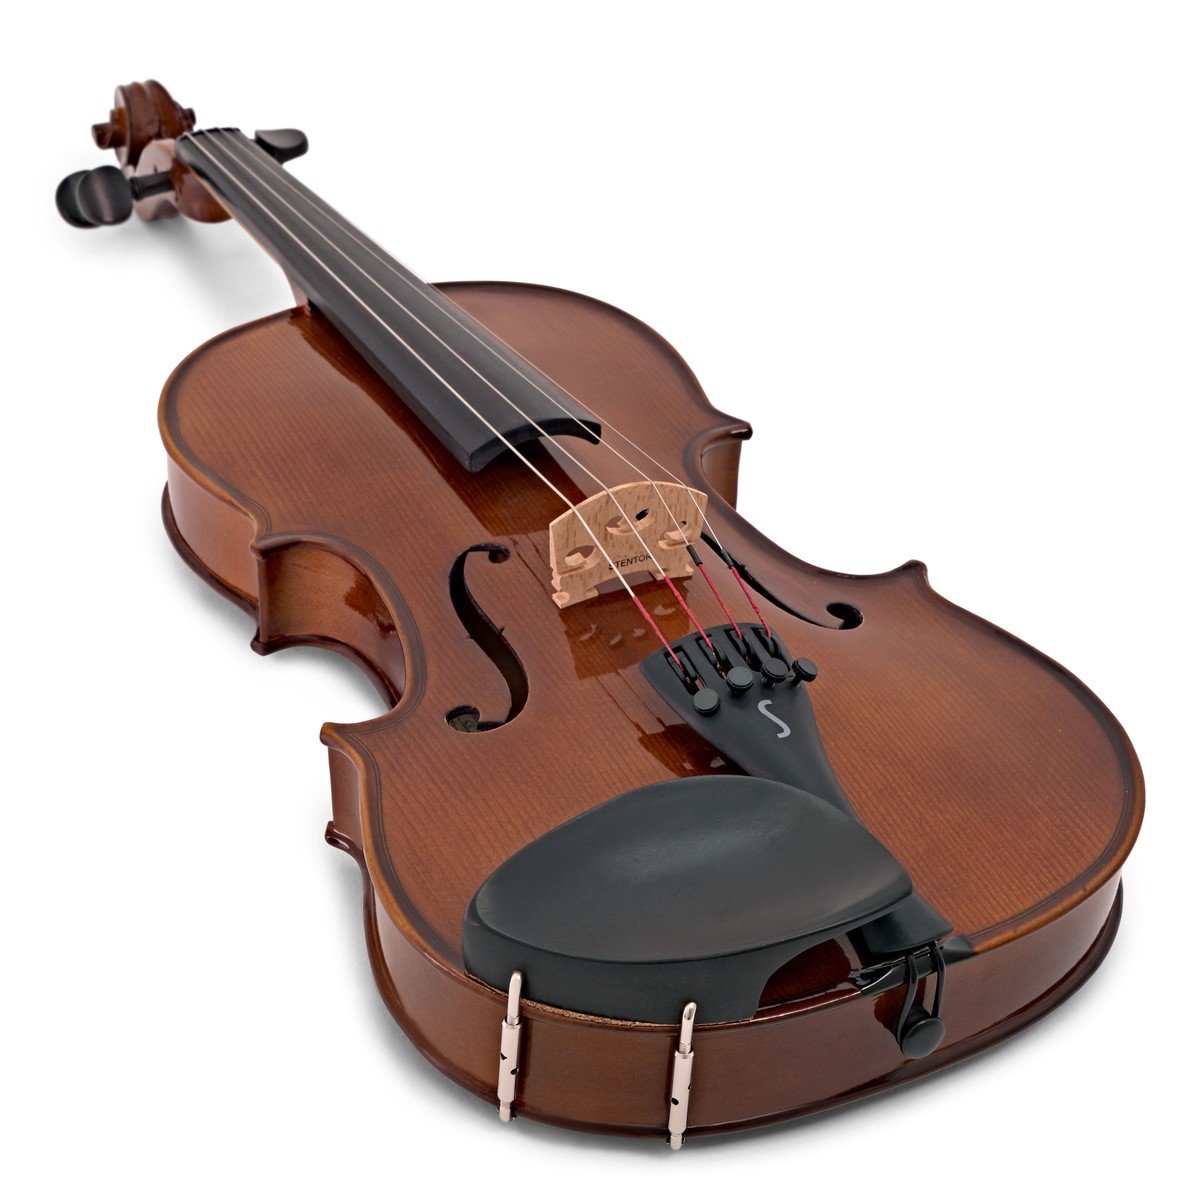 Купить скрипку в москве. Скрипка Stentor 4/4. Скрипка Mirra vb-310-1/2. Скрипка hora skr100-1/8. O.M. Monnich Violin outfit 1/4.